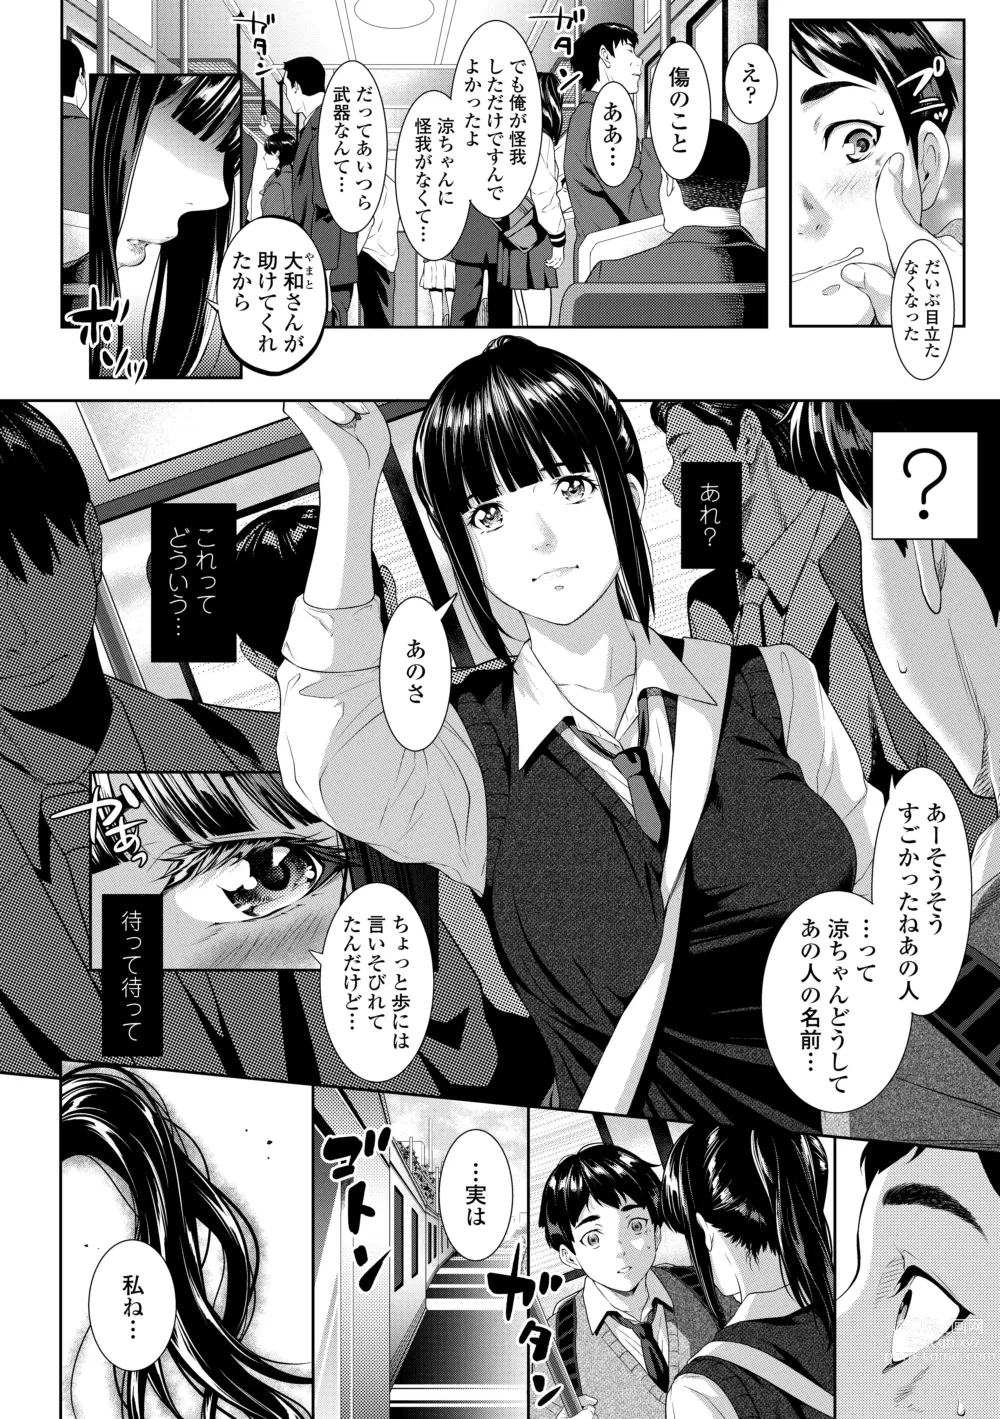 Page 8 of manga Tooi Kimi ni, Boku wa Todokanai - I cant reach you, far away.